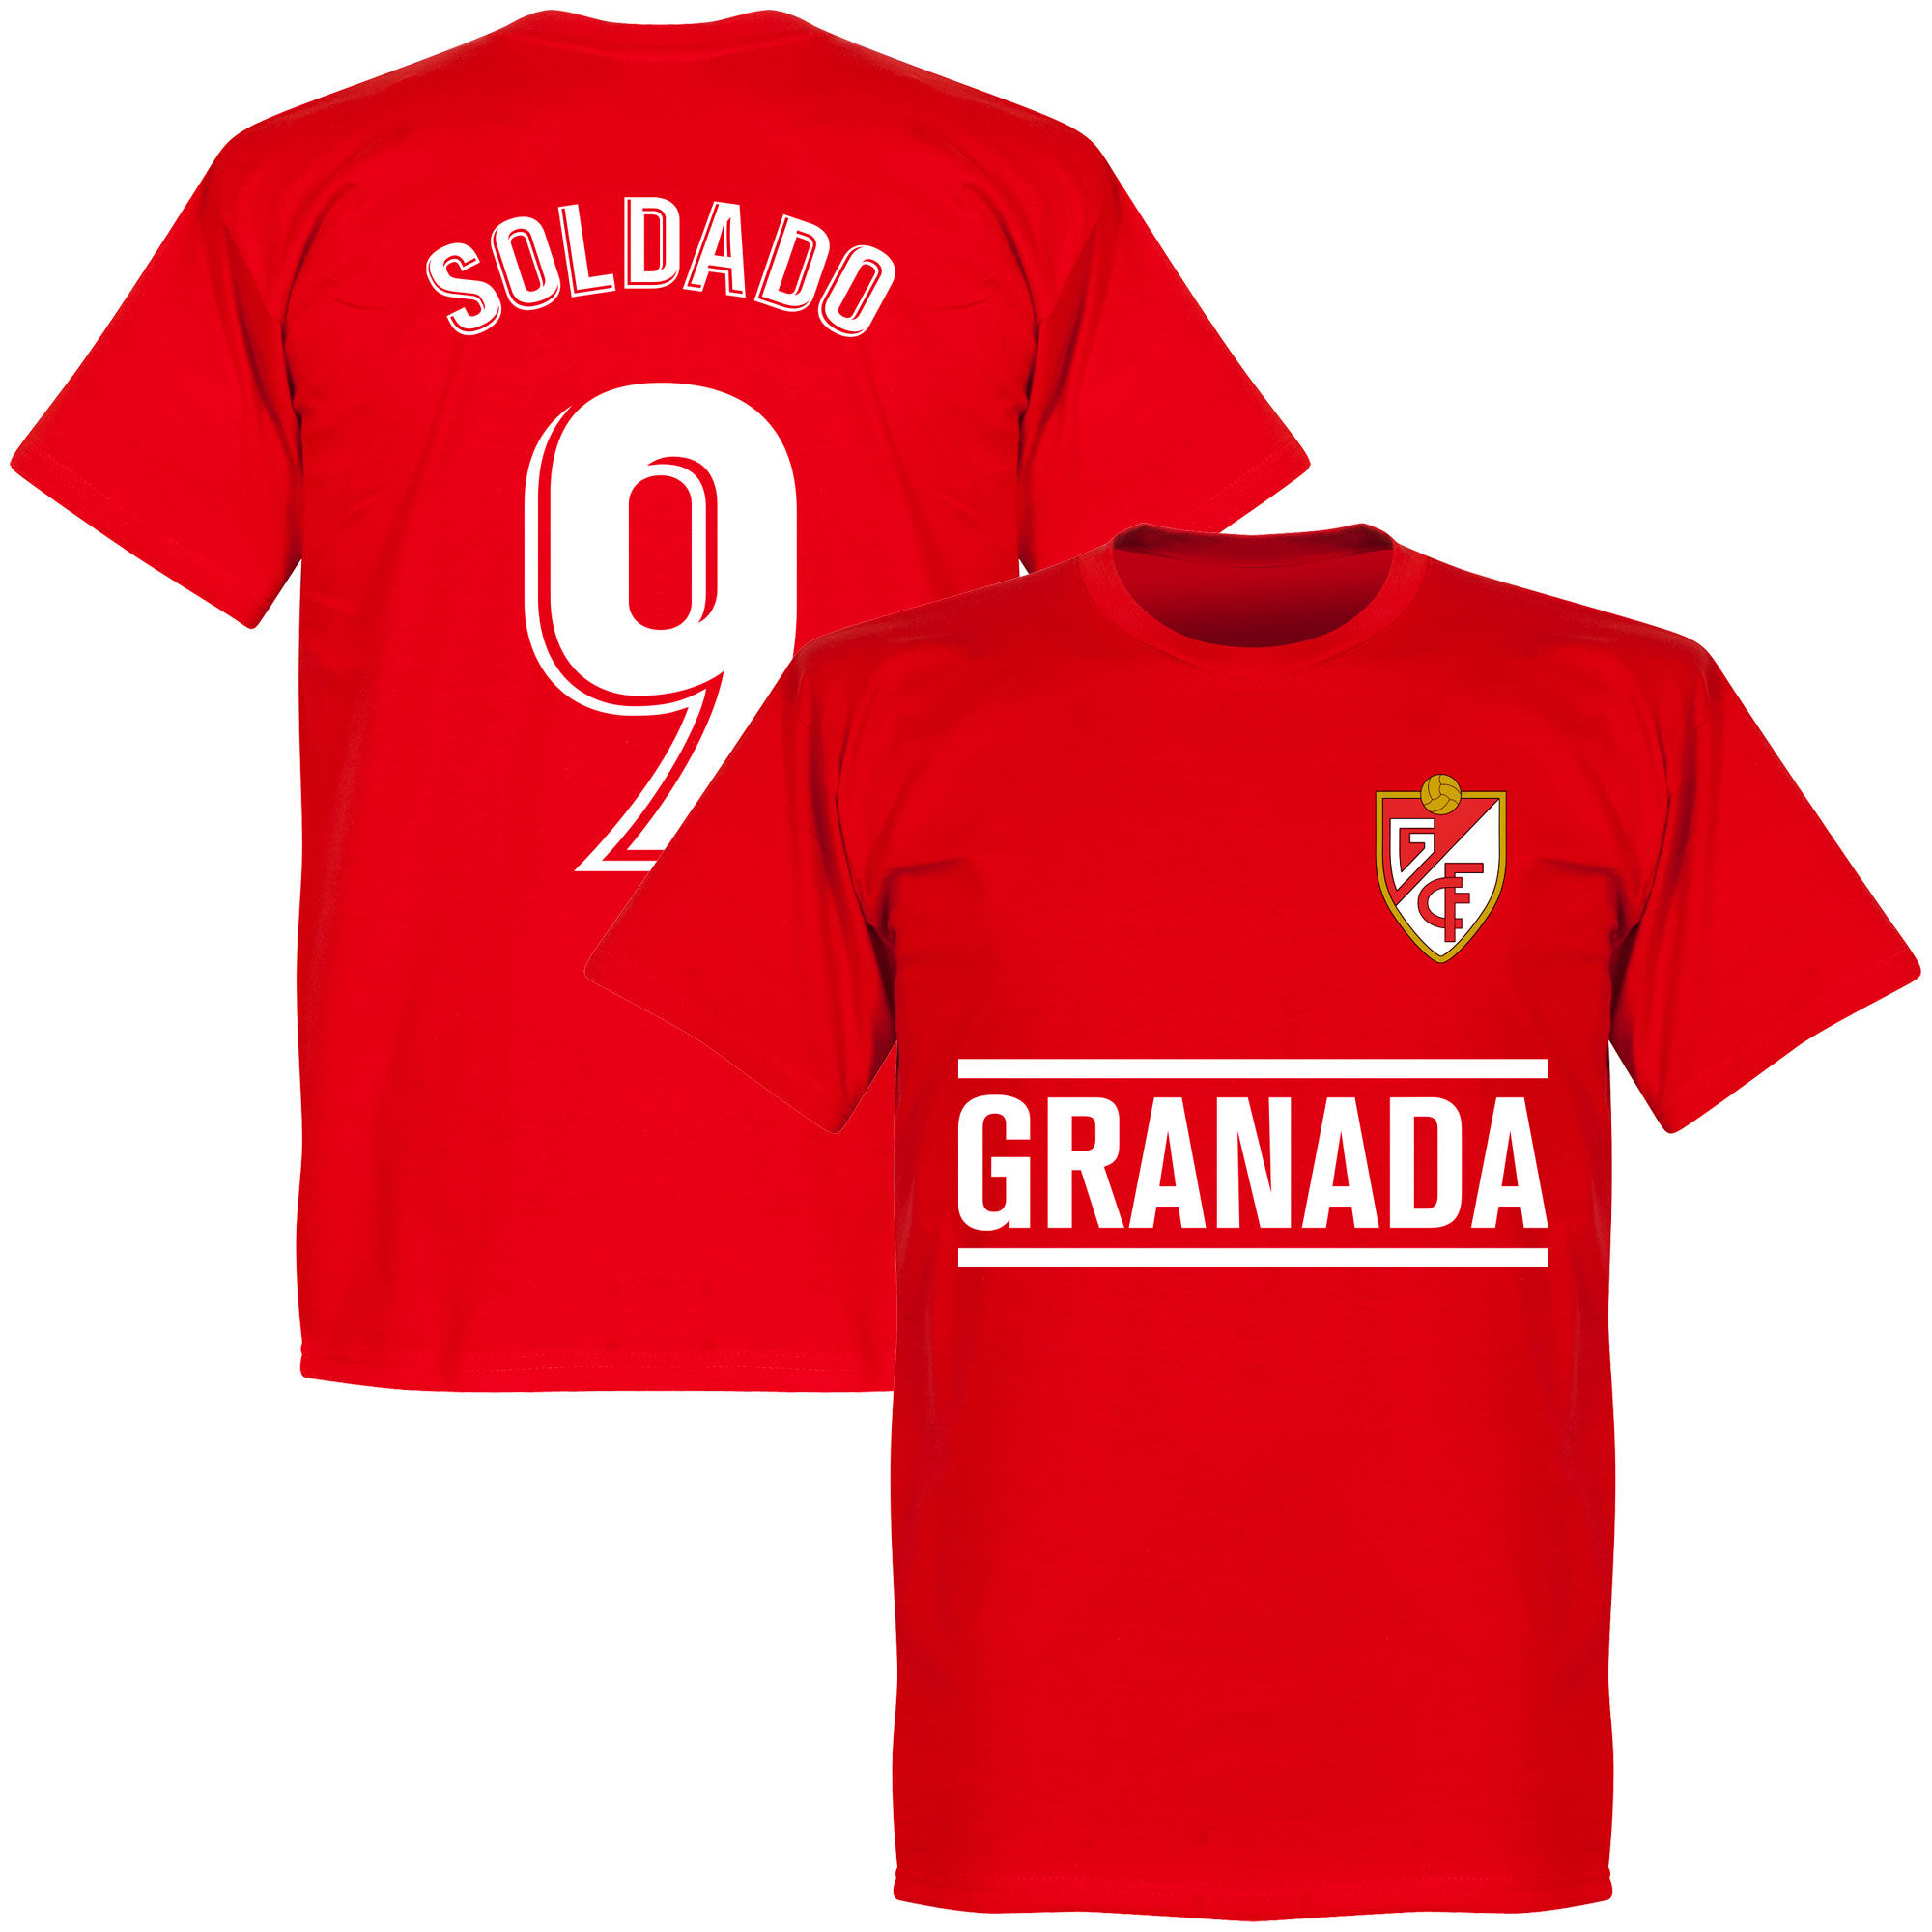 Granada CF - Tričko - červené, číslo 9, Roberto Soldado